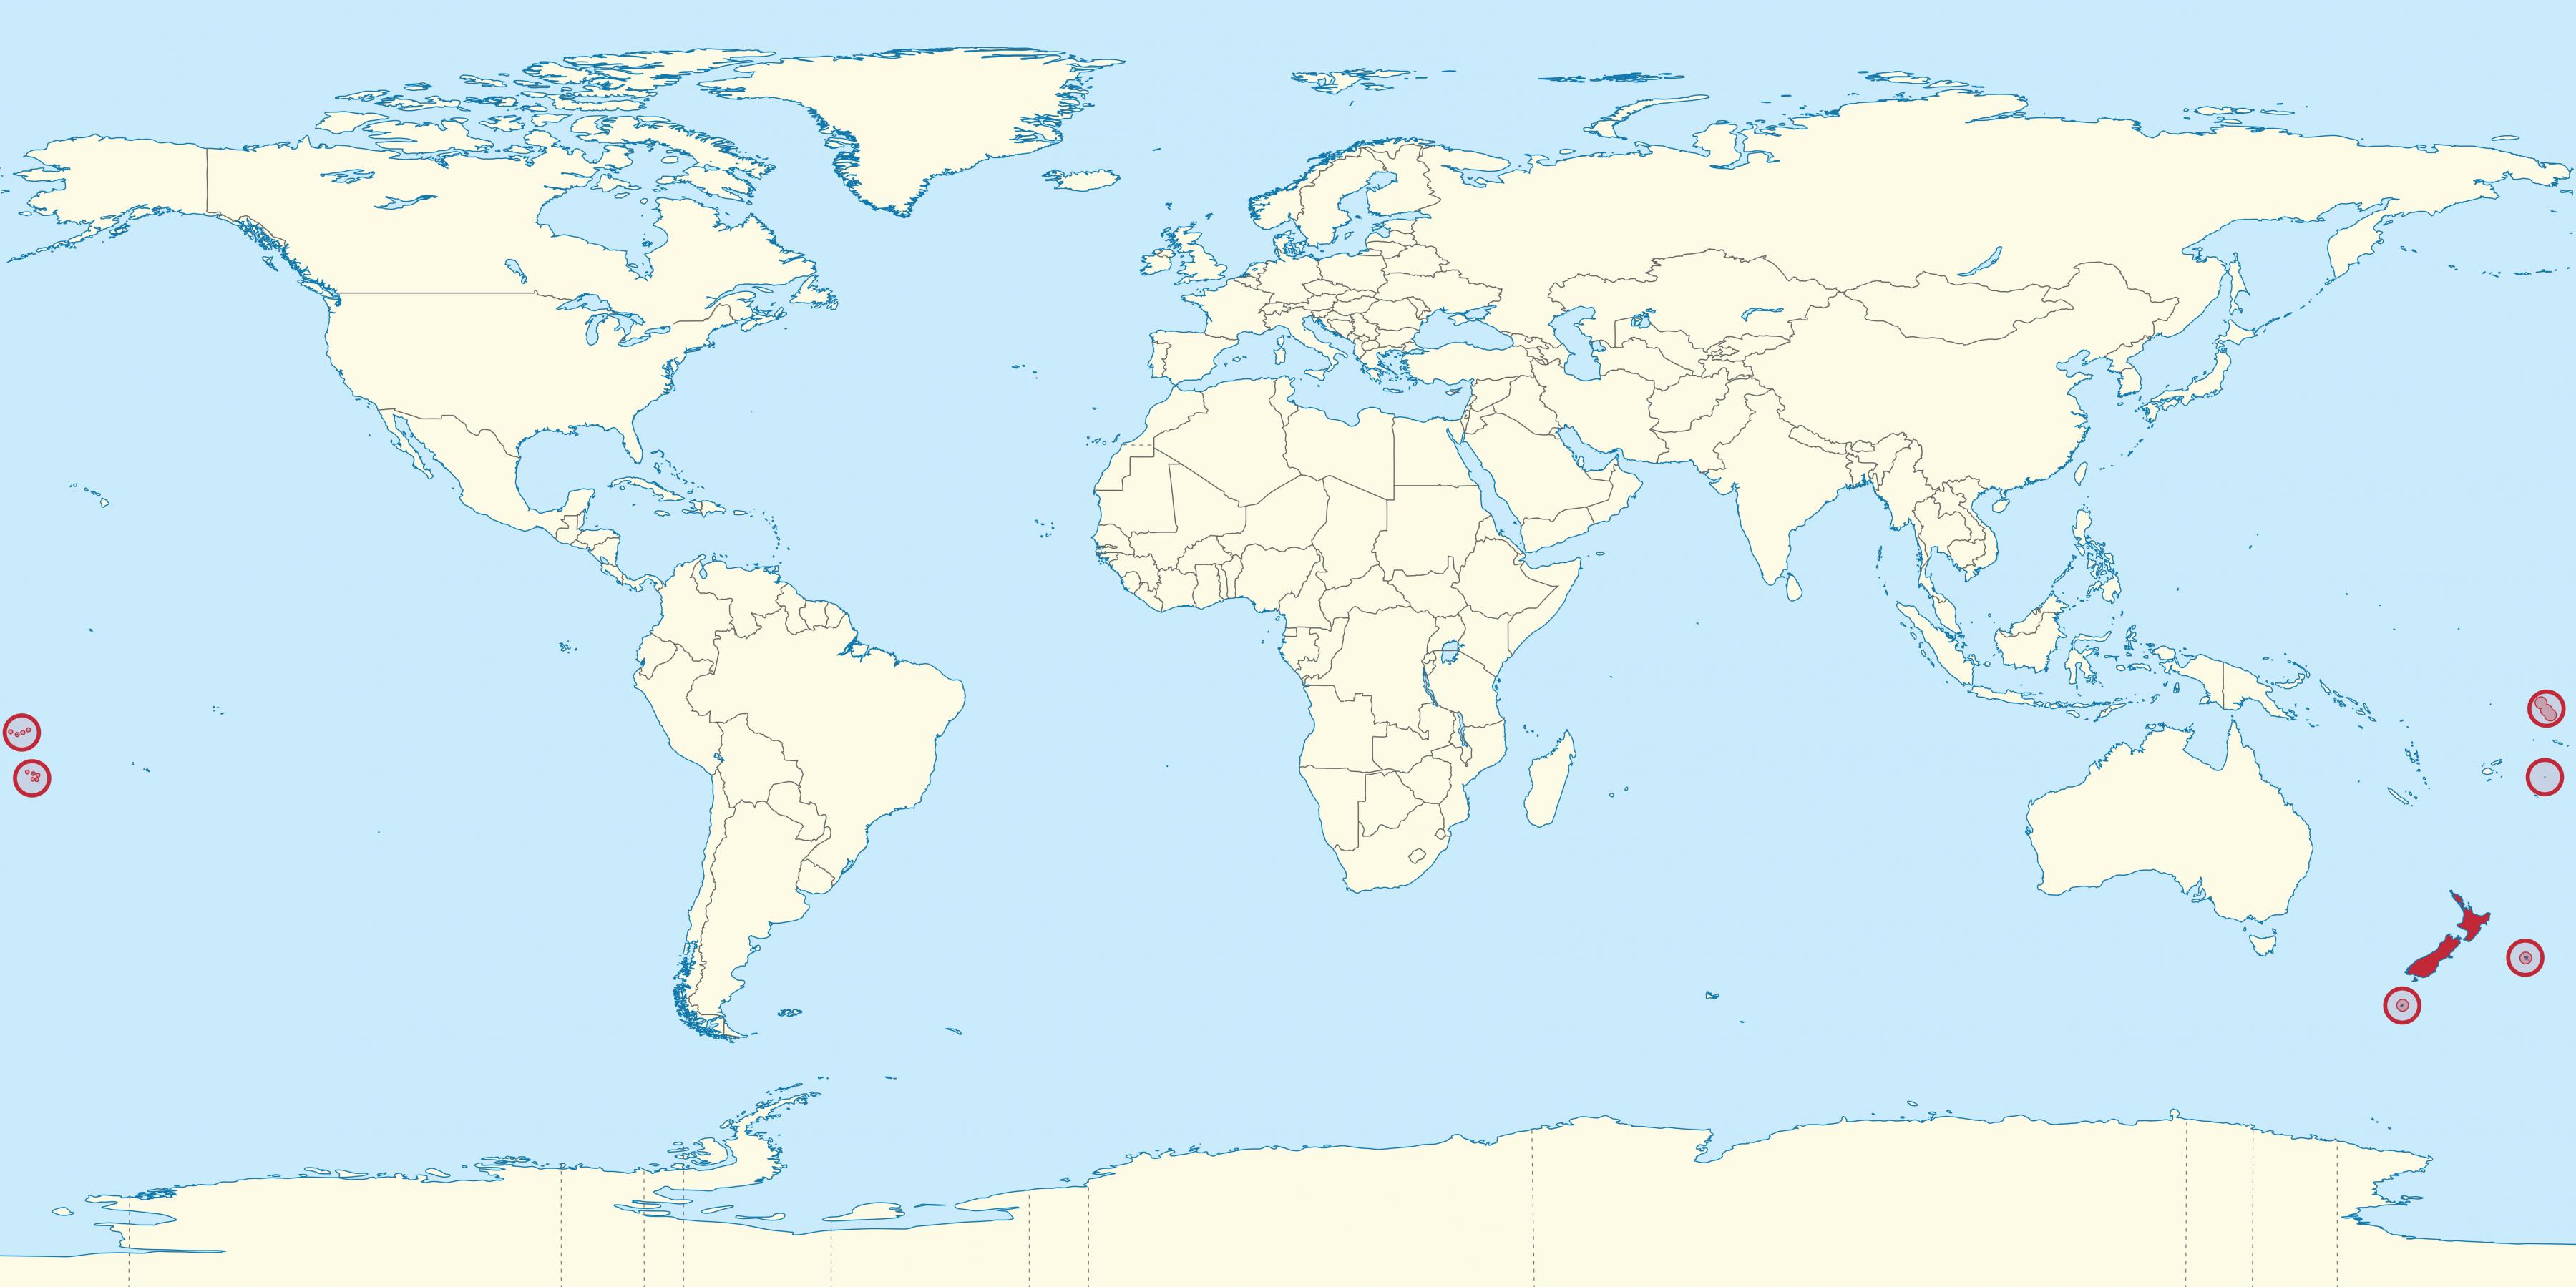 New Zealand On World Map 